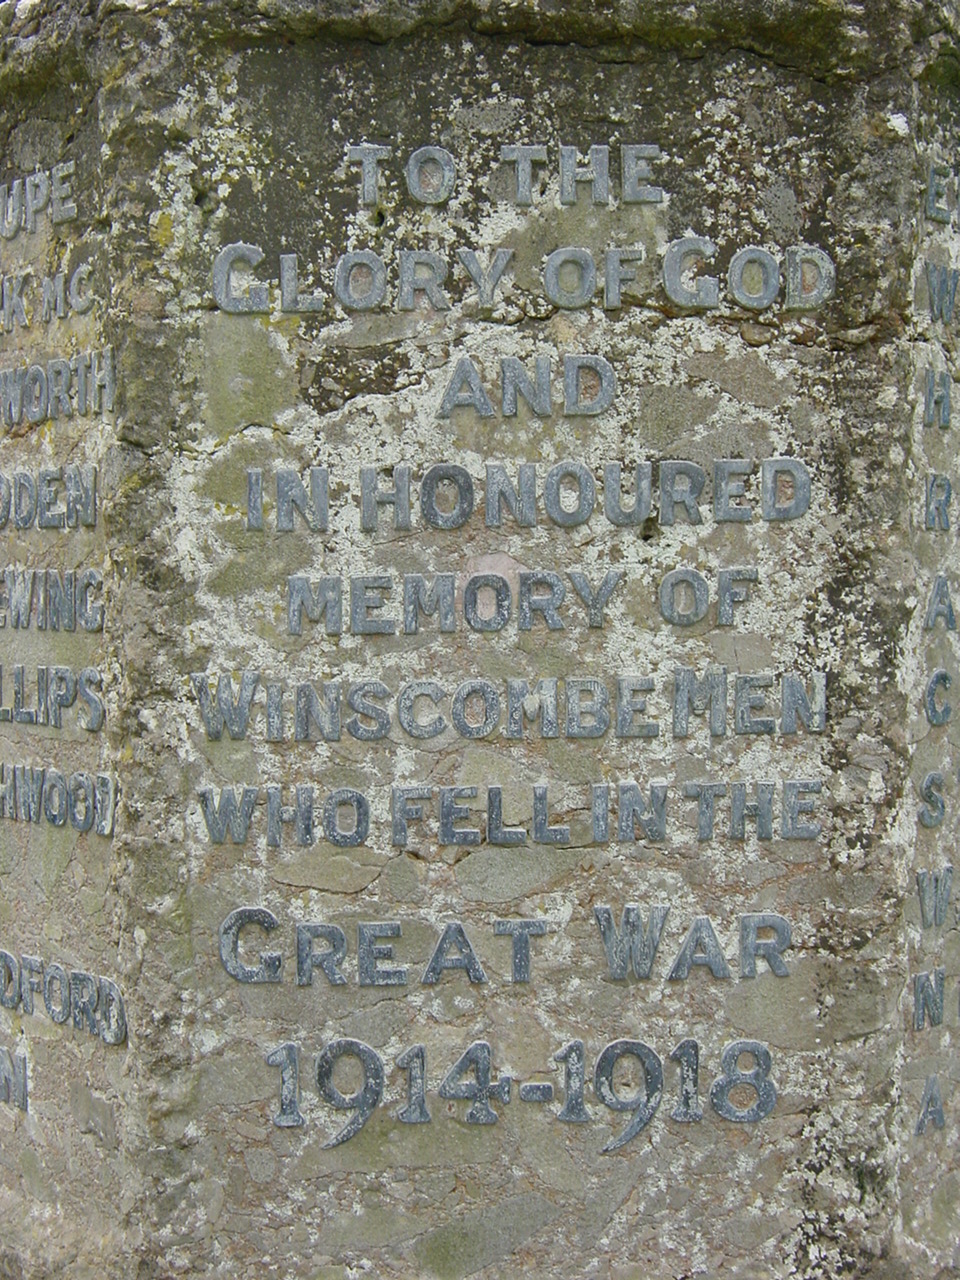 Winscombe Memorial (4)